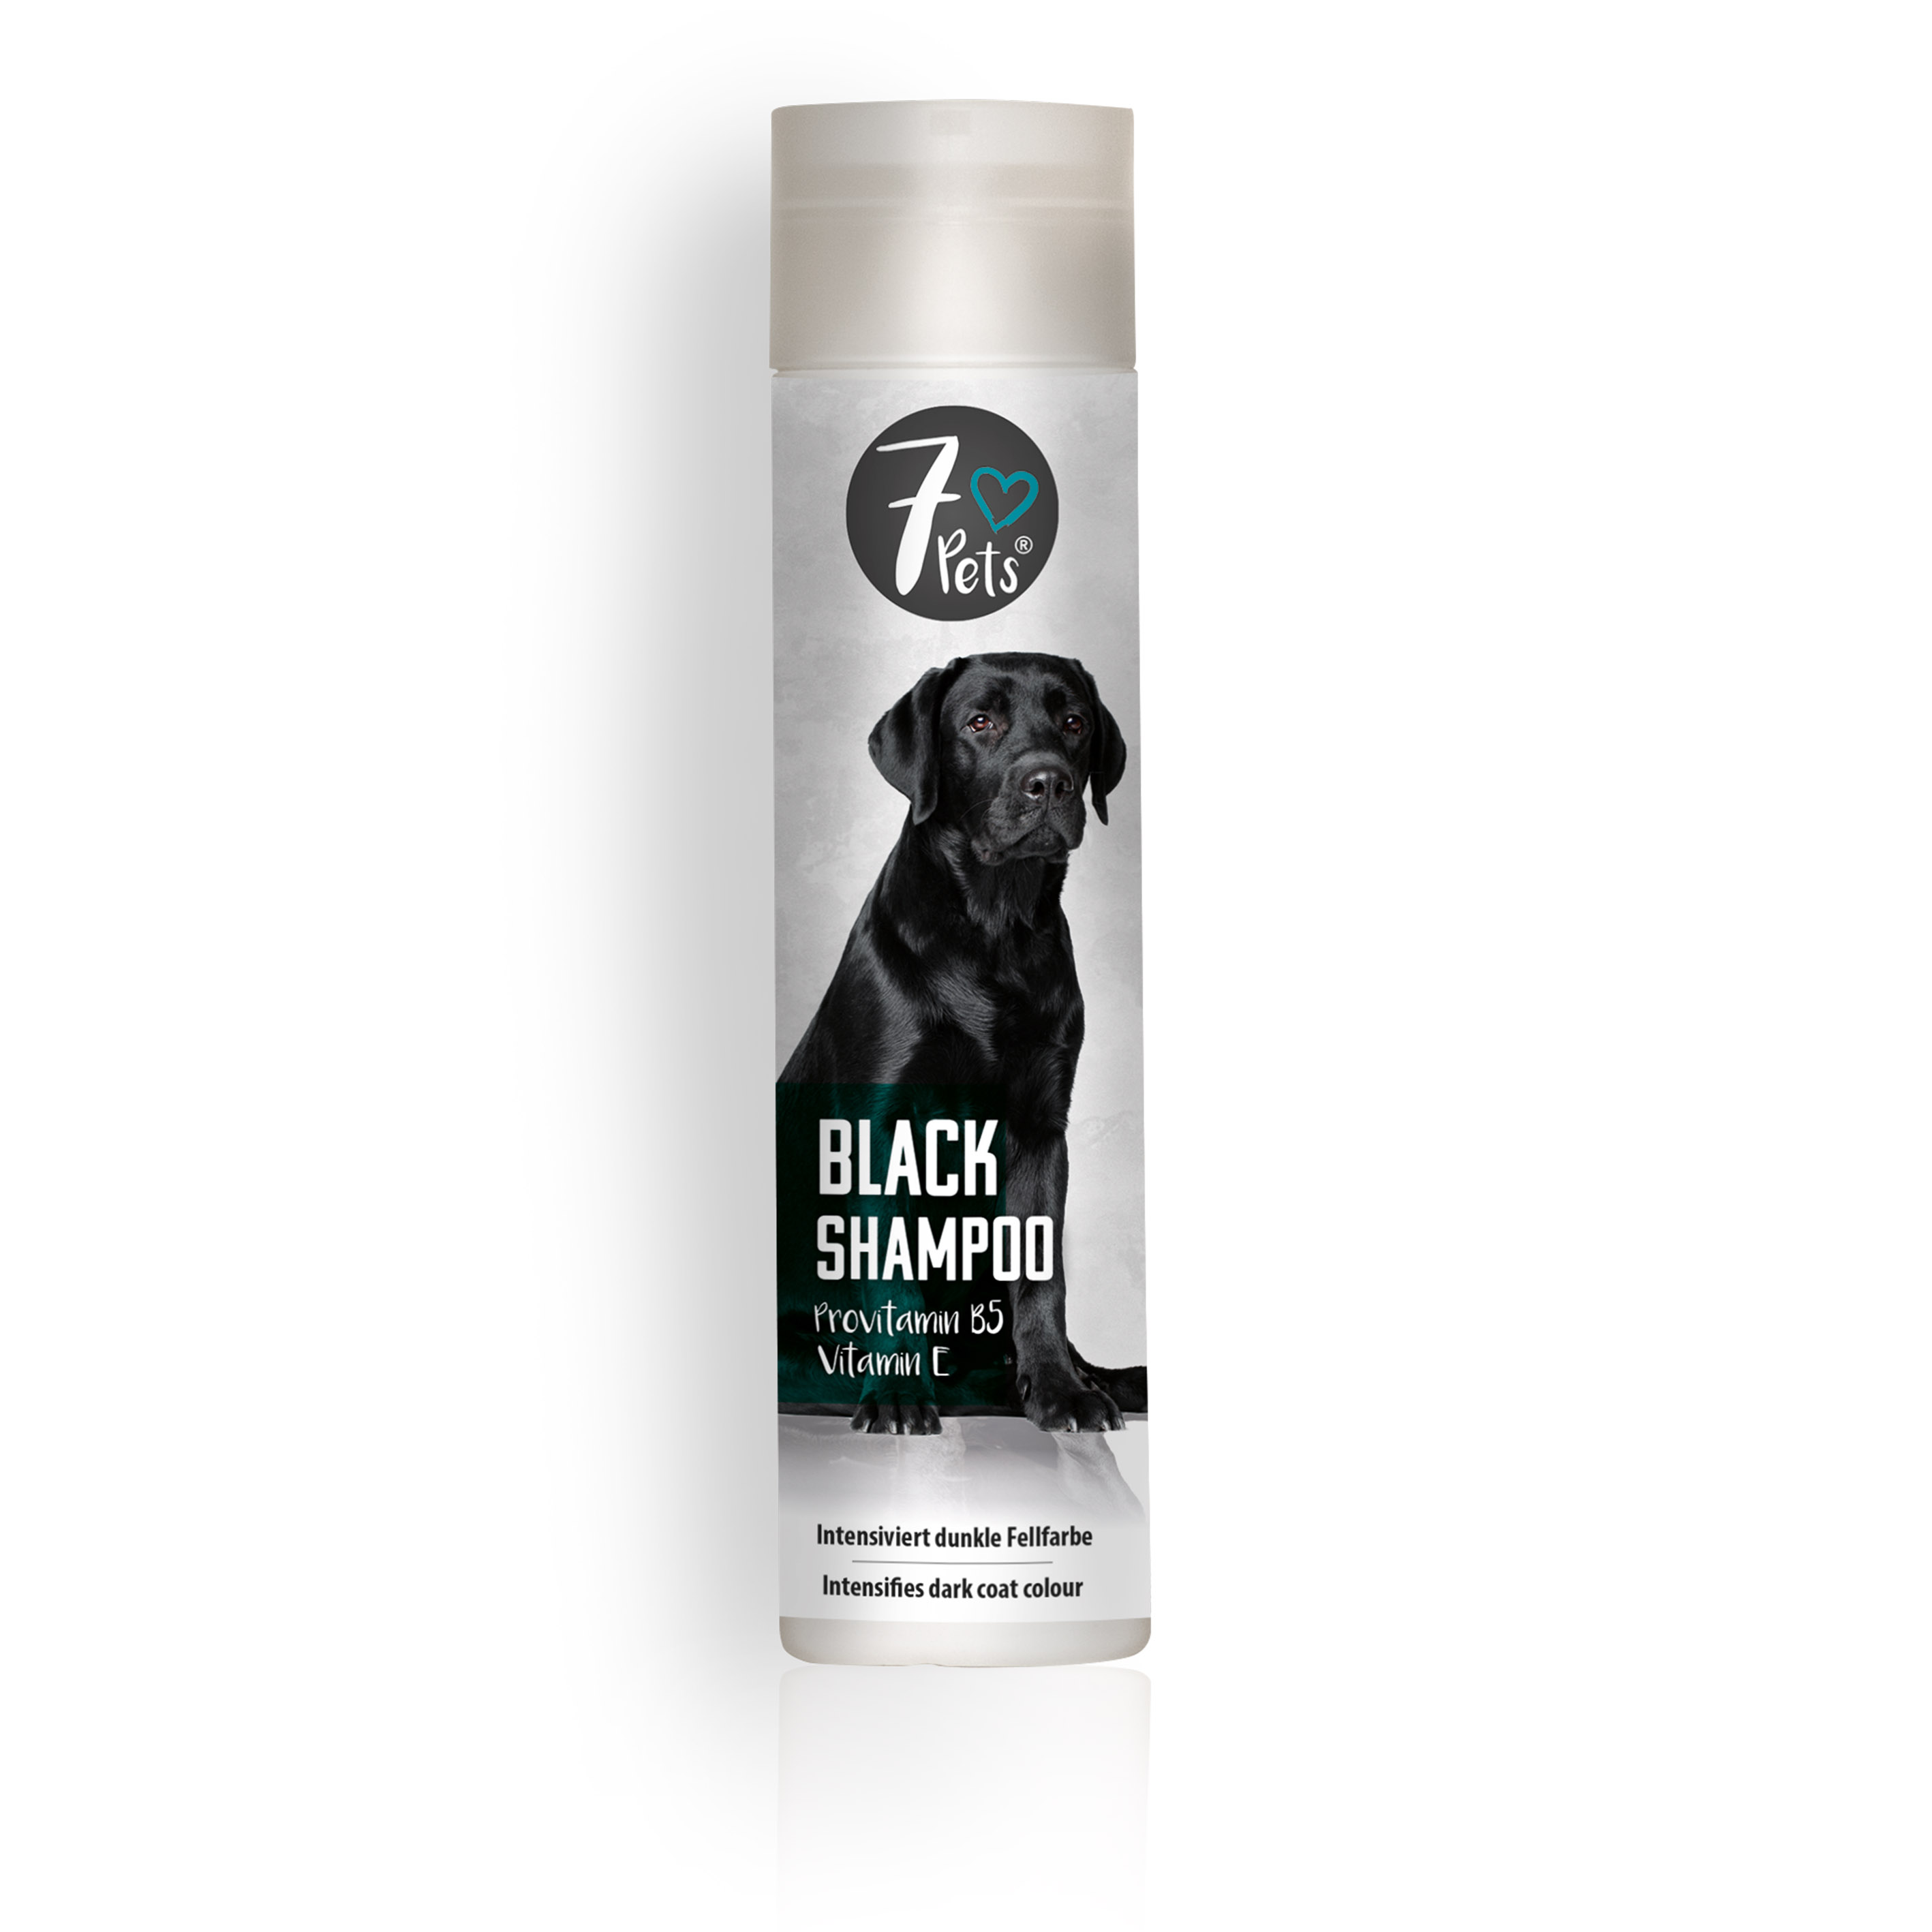 7Pets Black Shampoo 250 ml